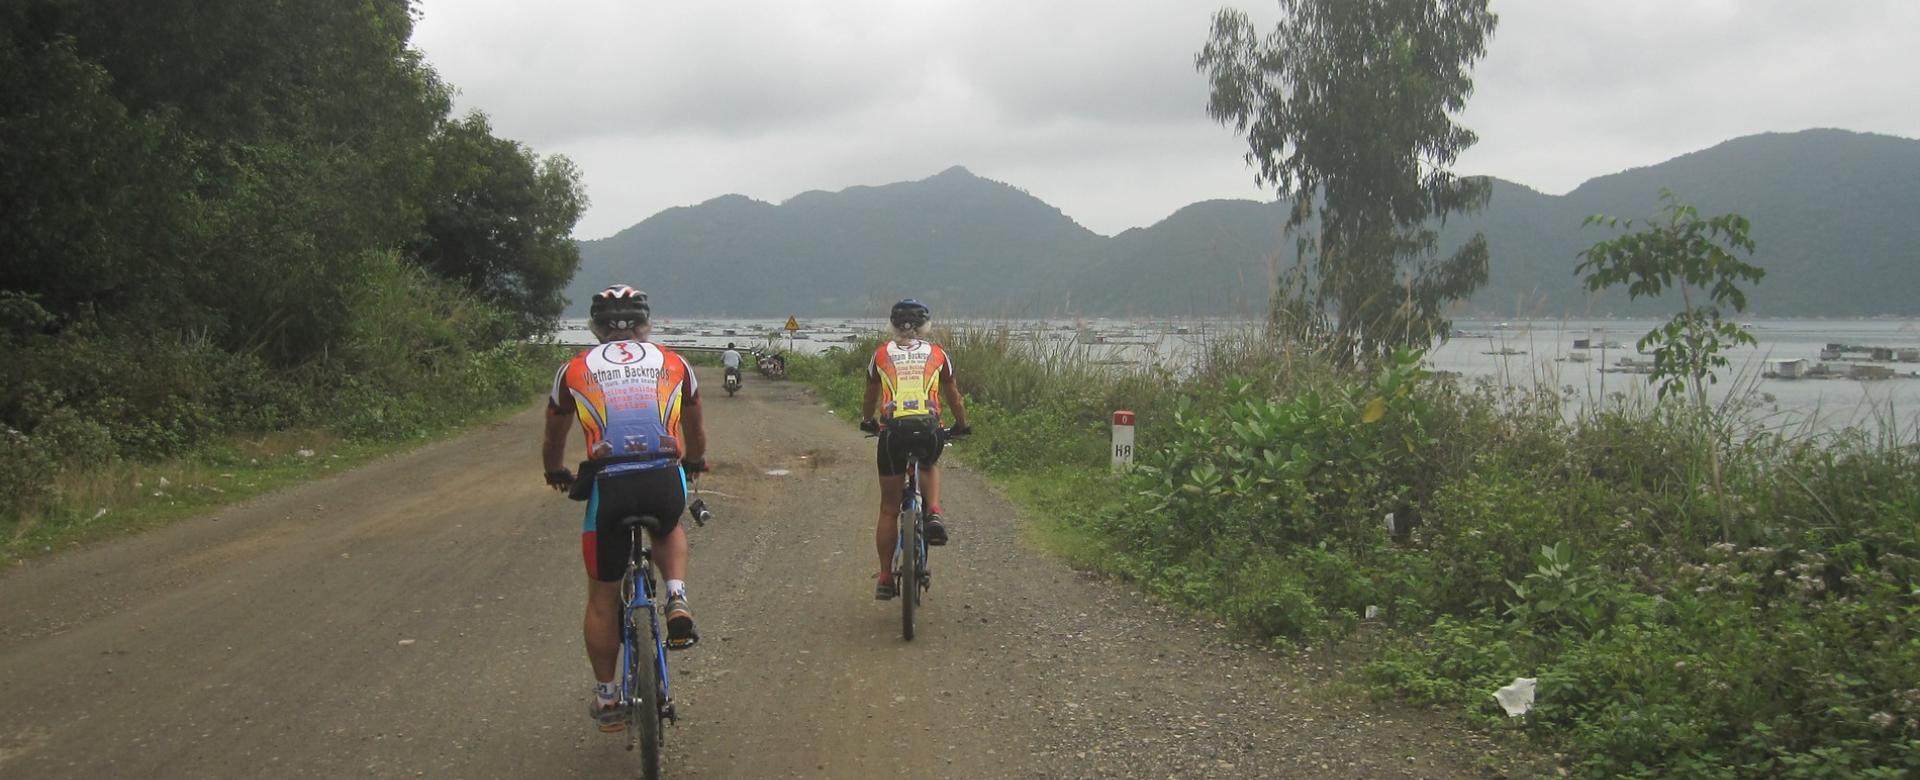 Biking Mekong Delta to Dalat, Nha Trang, Quy Nhon, Quang Ngai, Hoi An, and Hue